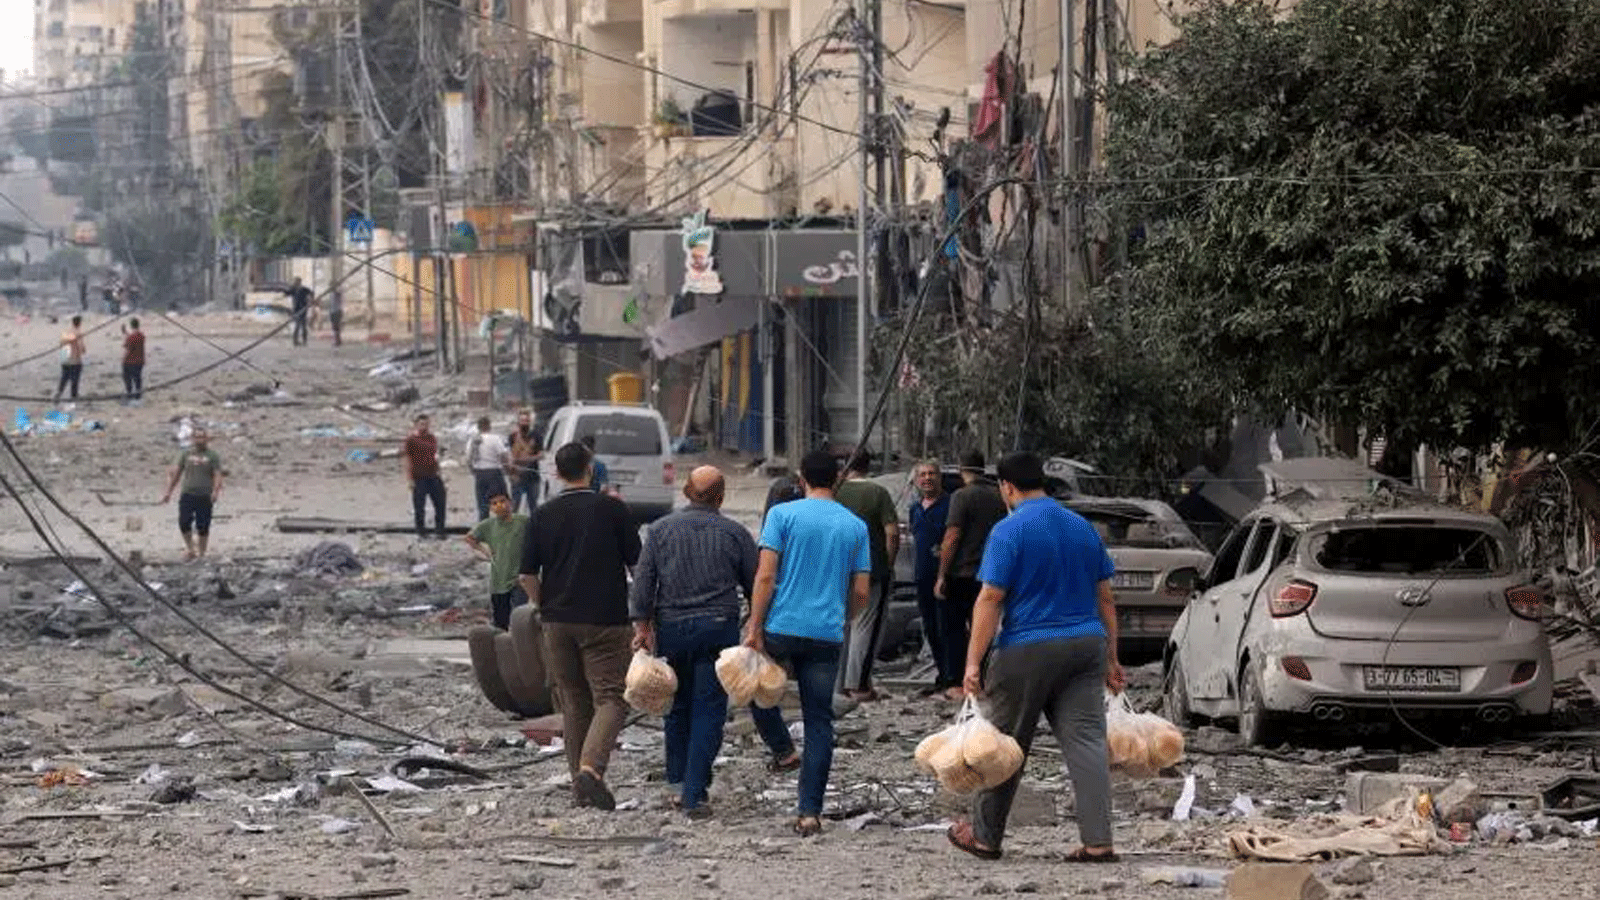 رجال فلسطينيون يحملون الخبز في شارع تعرّض لقصف شديد في أعقاب الغارات الجوية الإسرائيلية على مدينة غزة